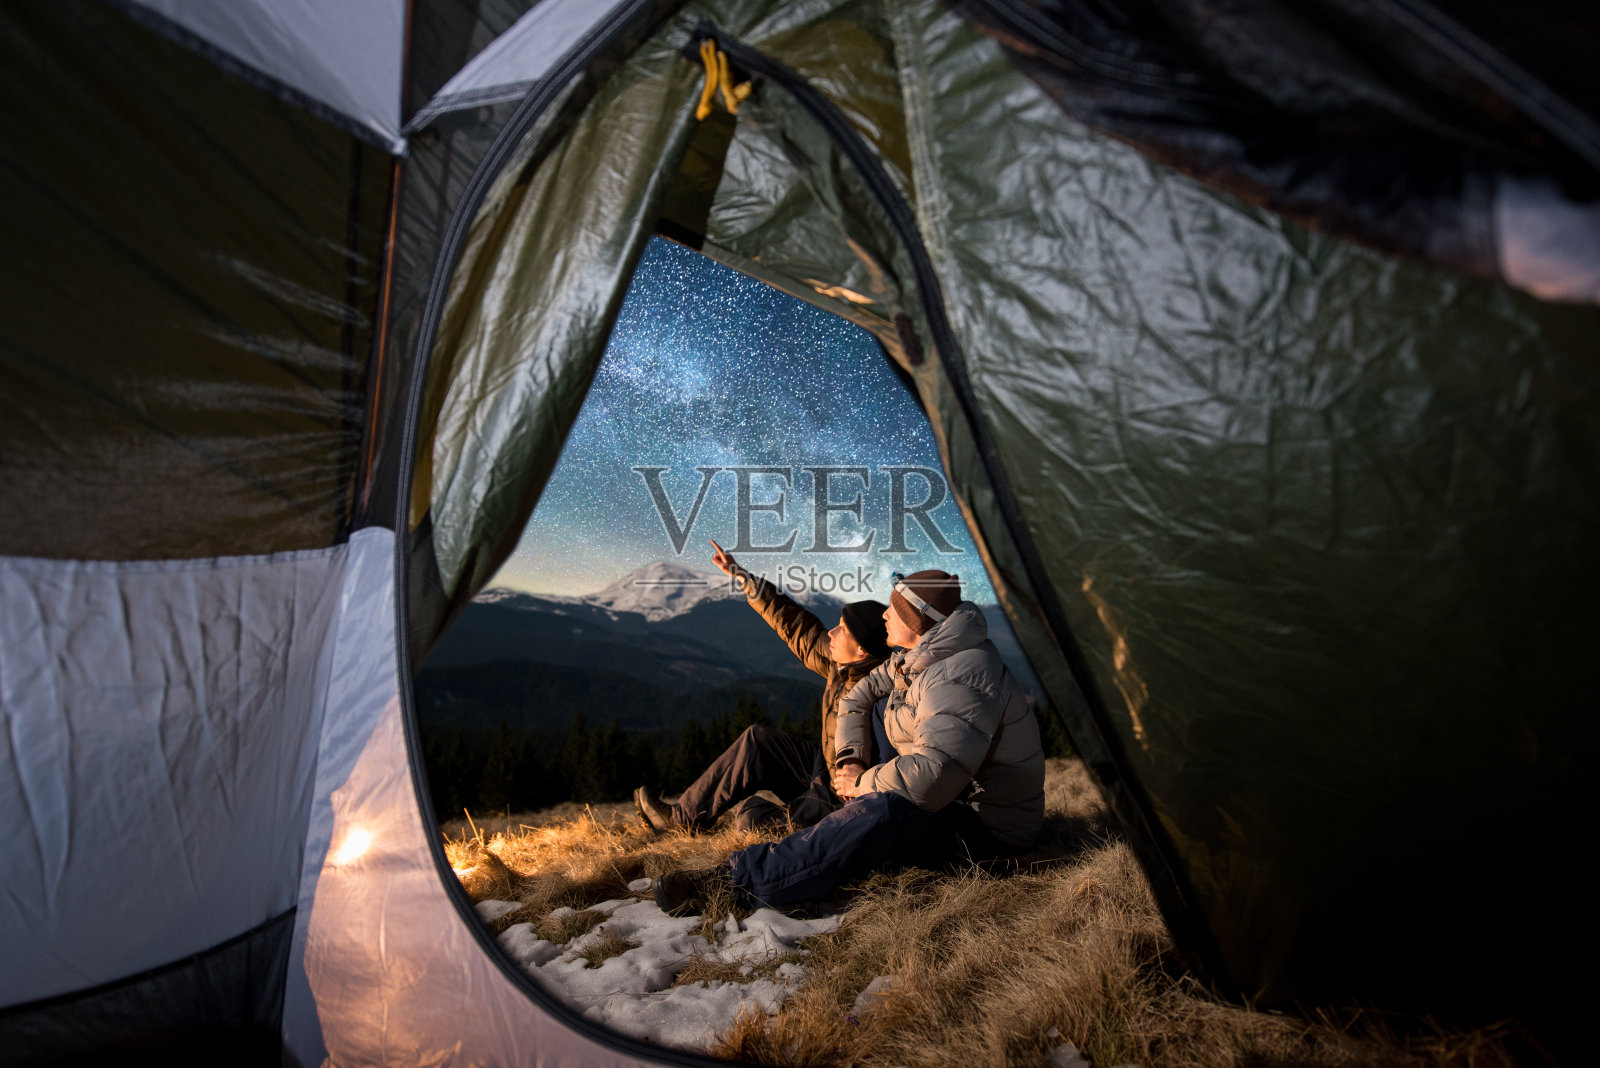 从帐篷里面望去，两位游客正在山里的宿营中休息。男人们坐在篝火旁。一个人指着满是星星和银河的美丽夜空照片摄影图片